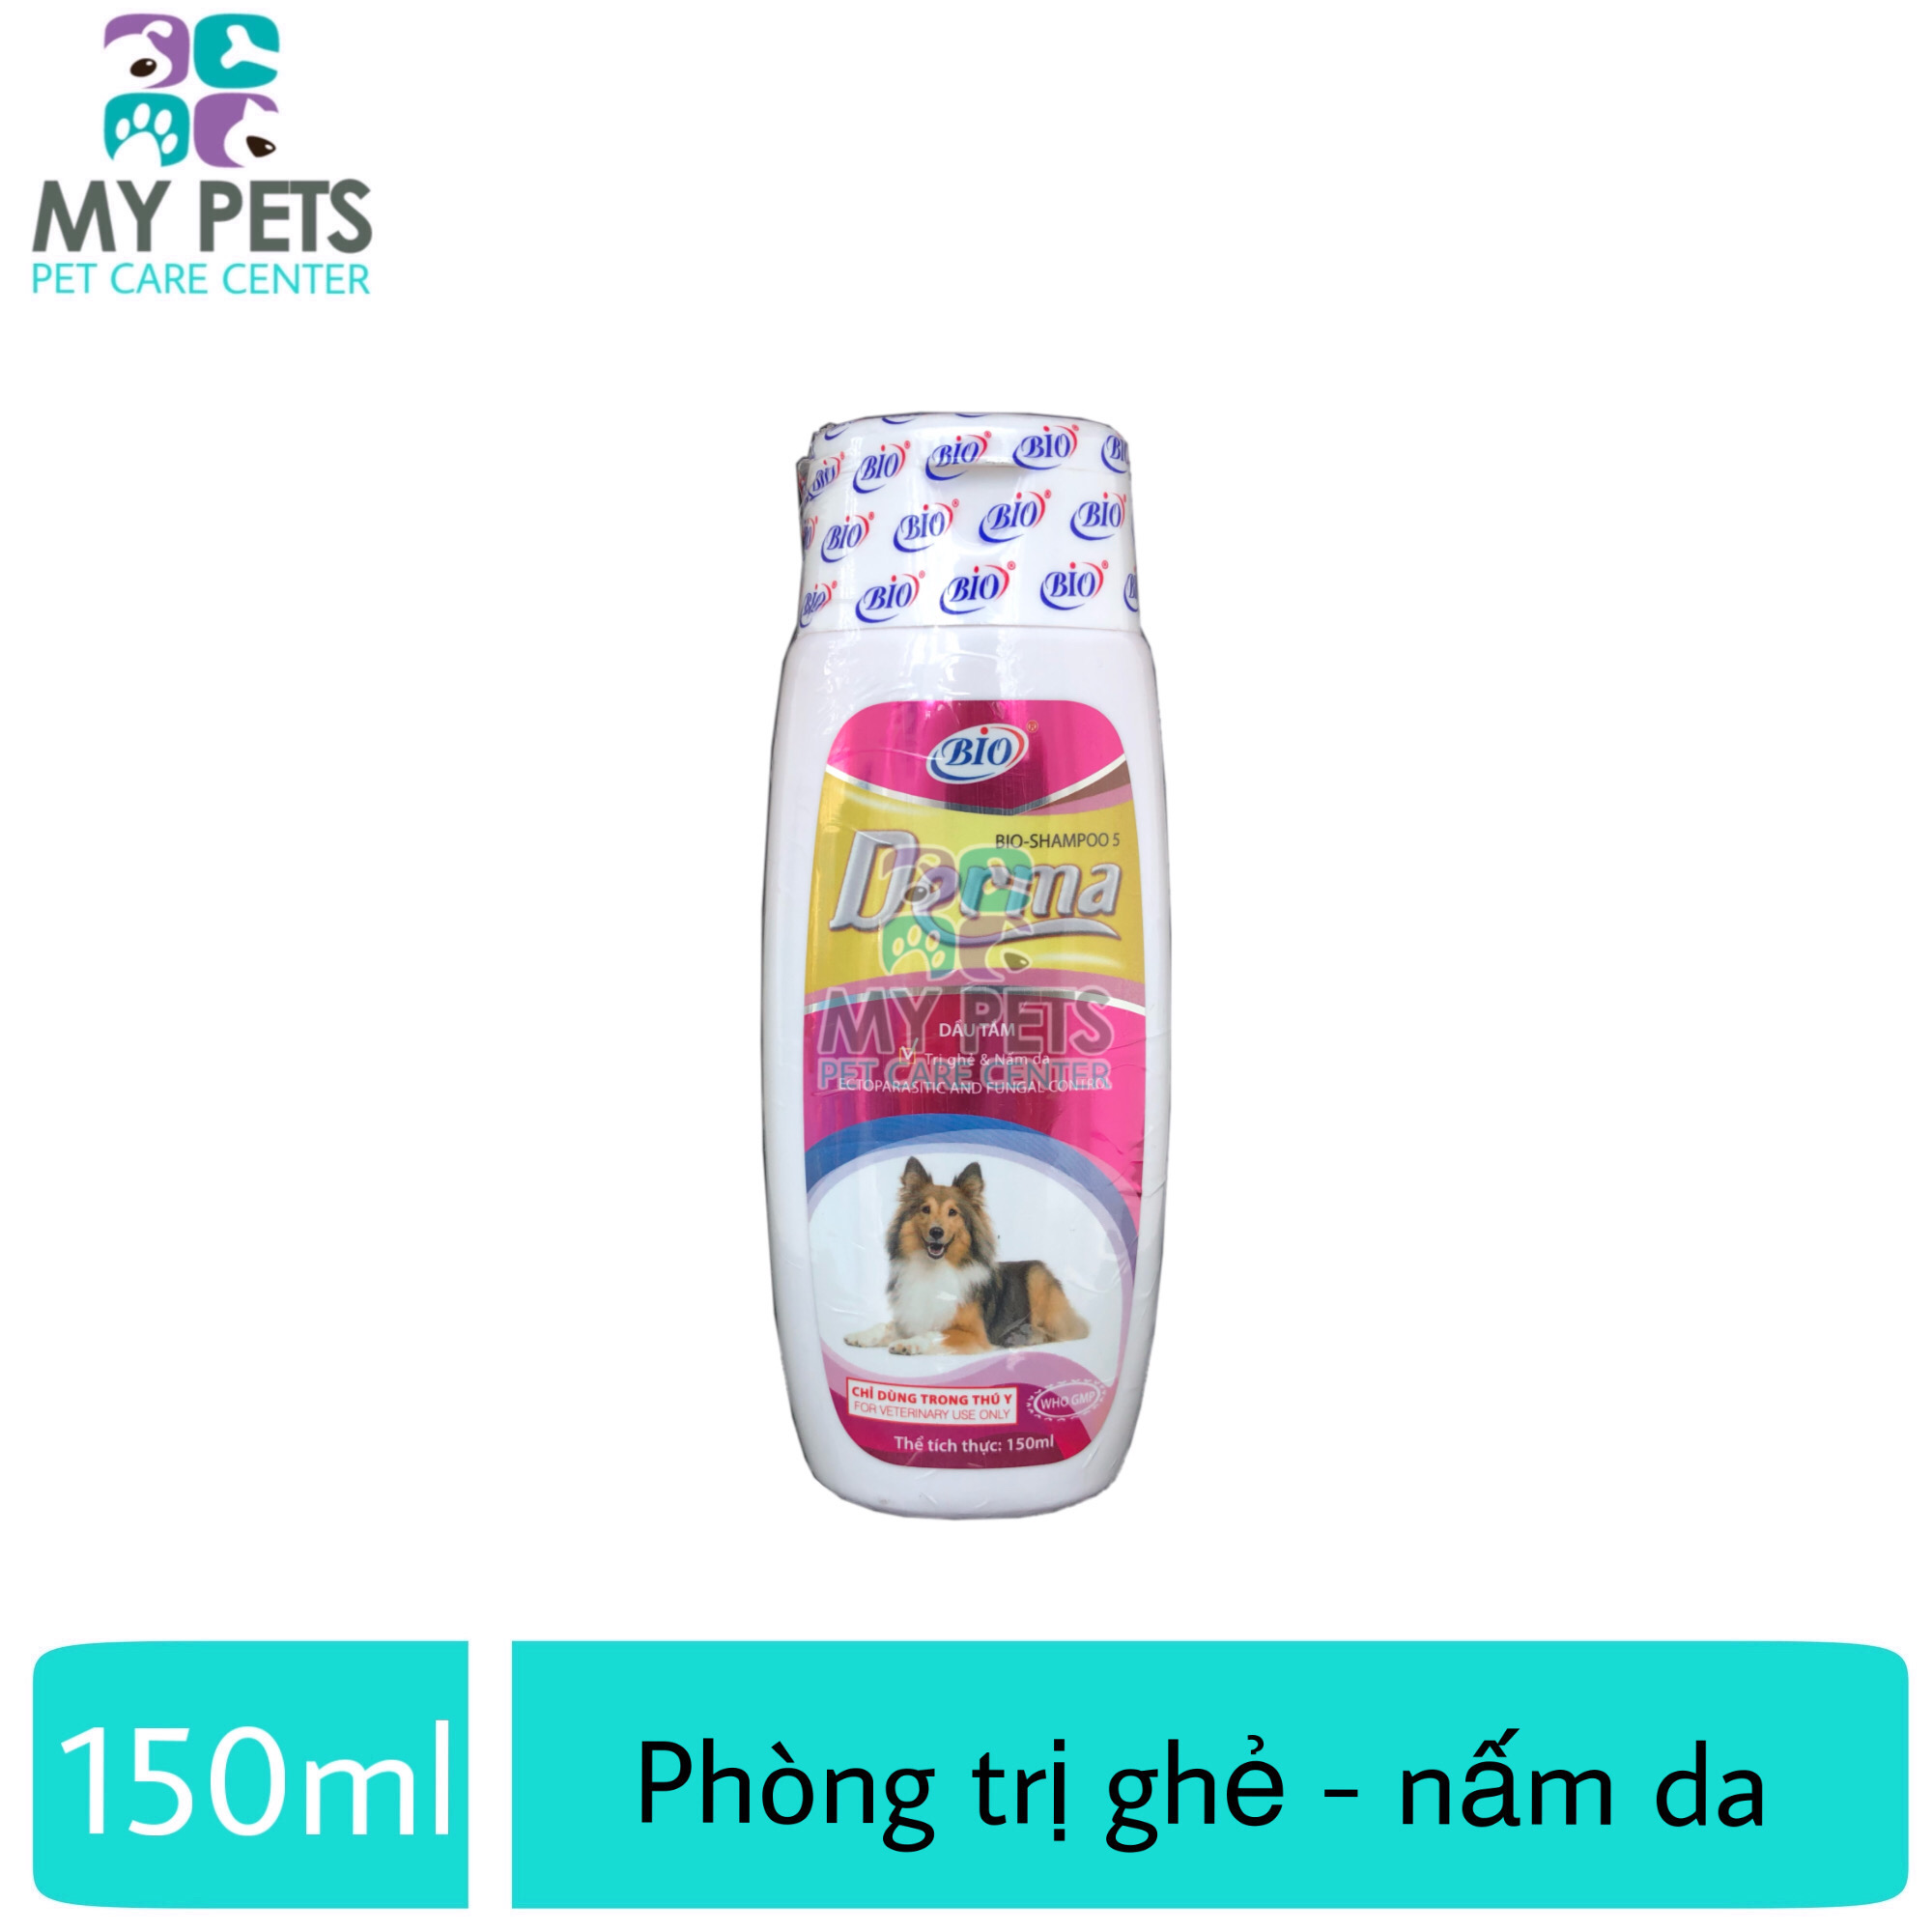 Sữa tắm diệt ve ghẻ nấm da cho chó mèo - Bio Derma 150ml